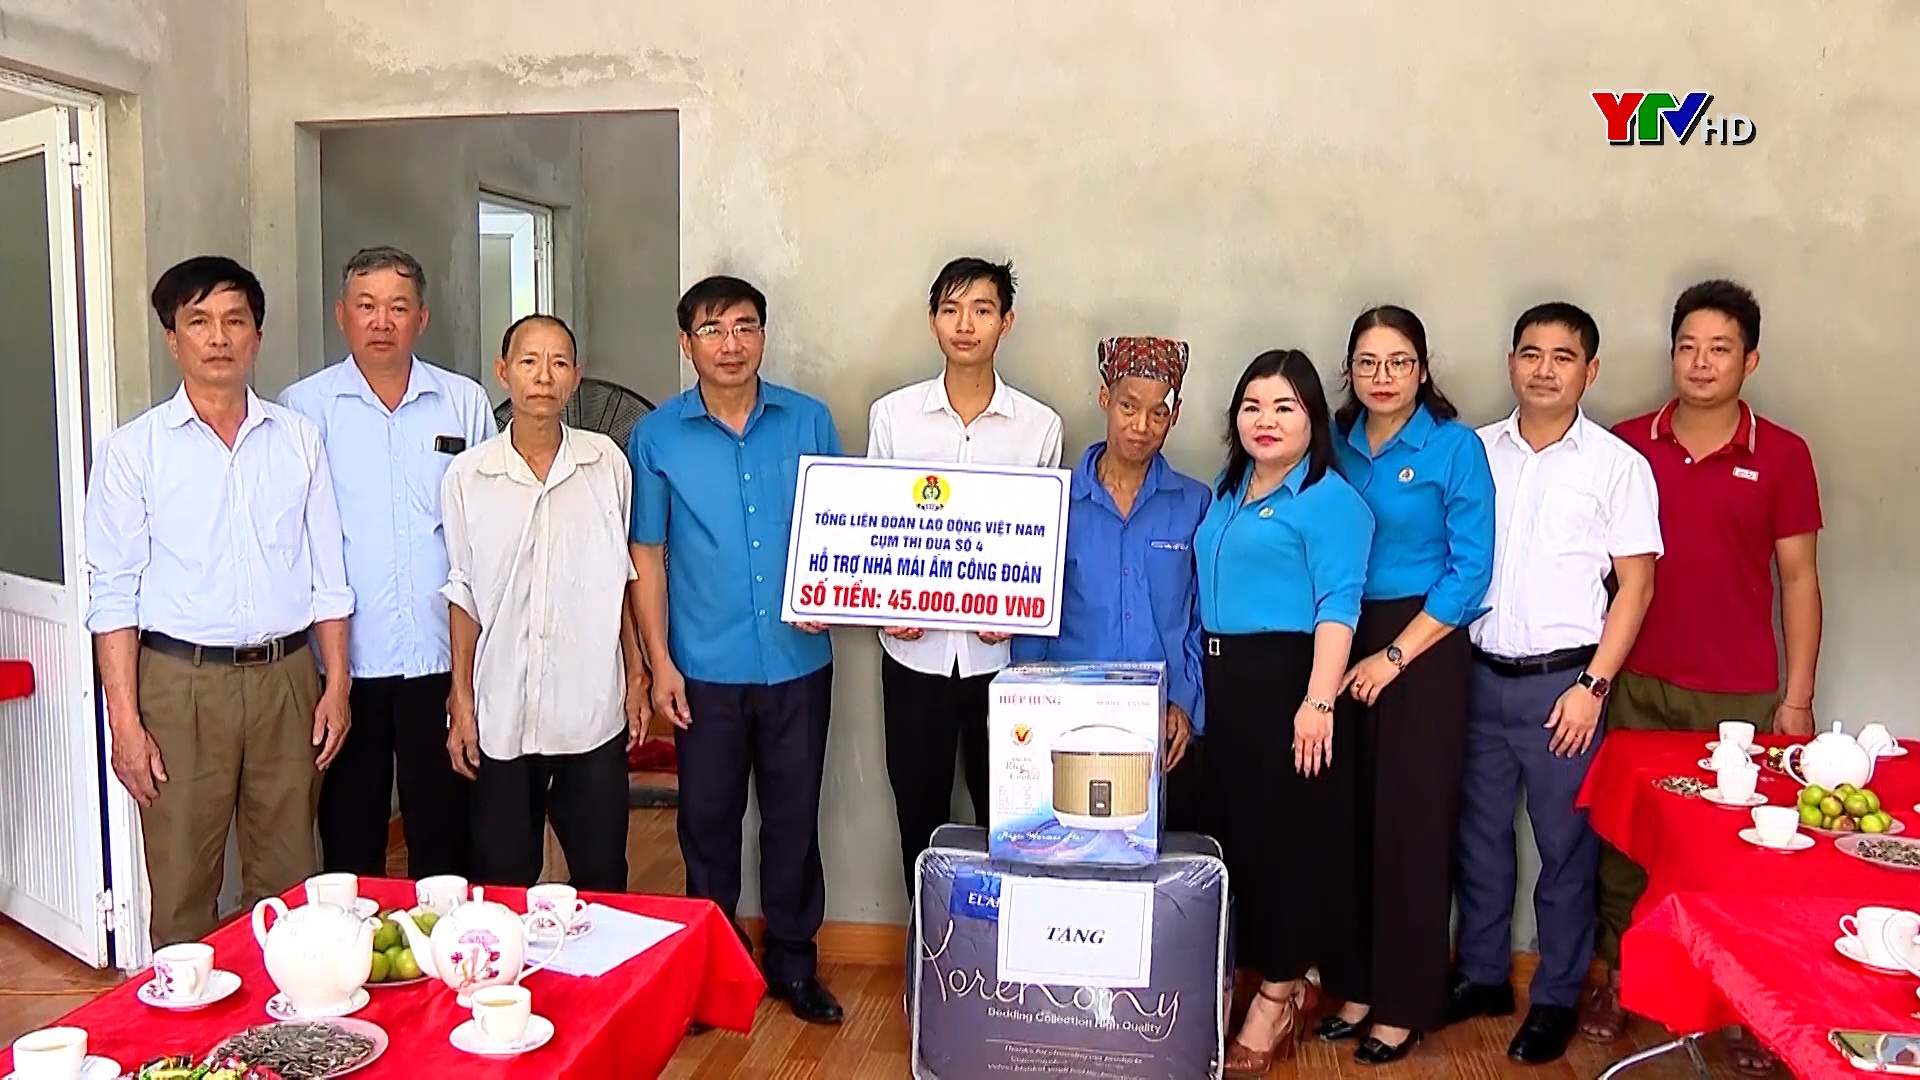 Trao nhà "Mái ấm công đoàn" cho đoàn viên Công đoàn cơ sở công ty TNHH Hapaco Yên Sơn